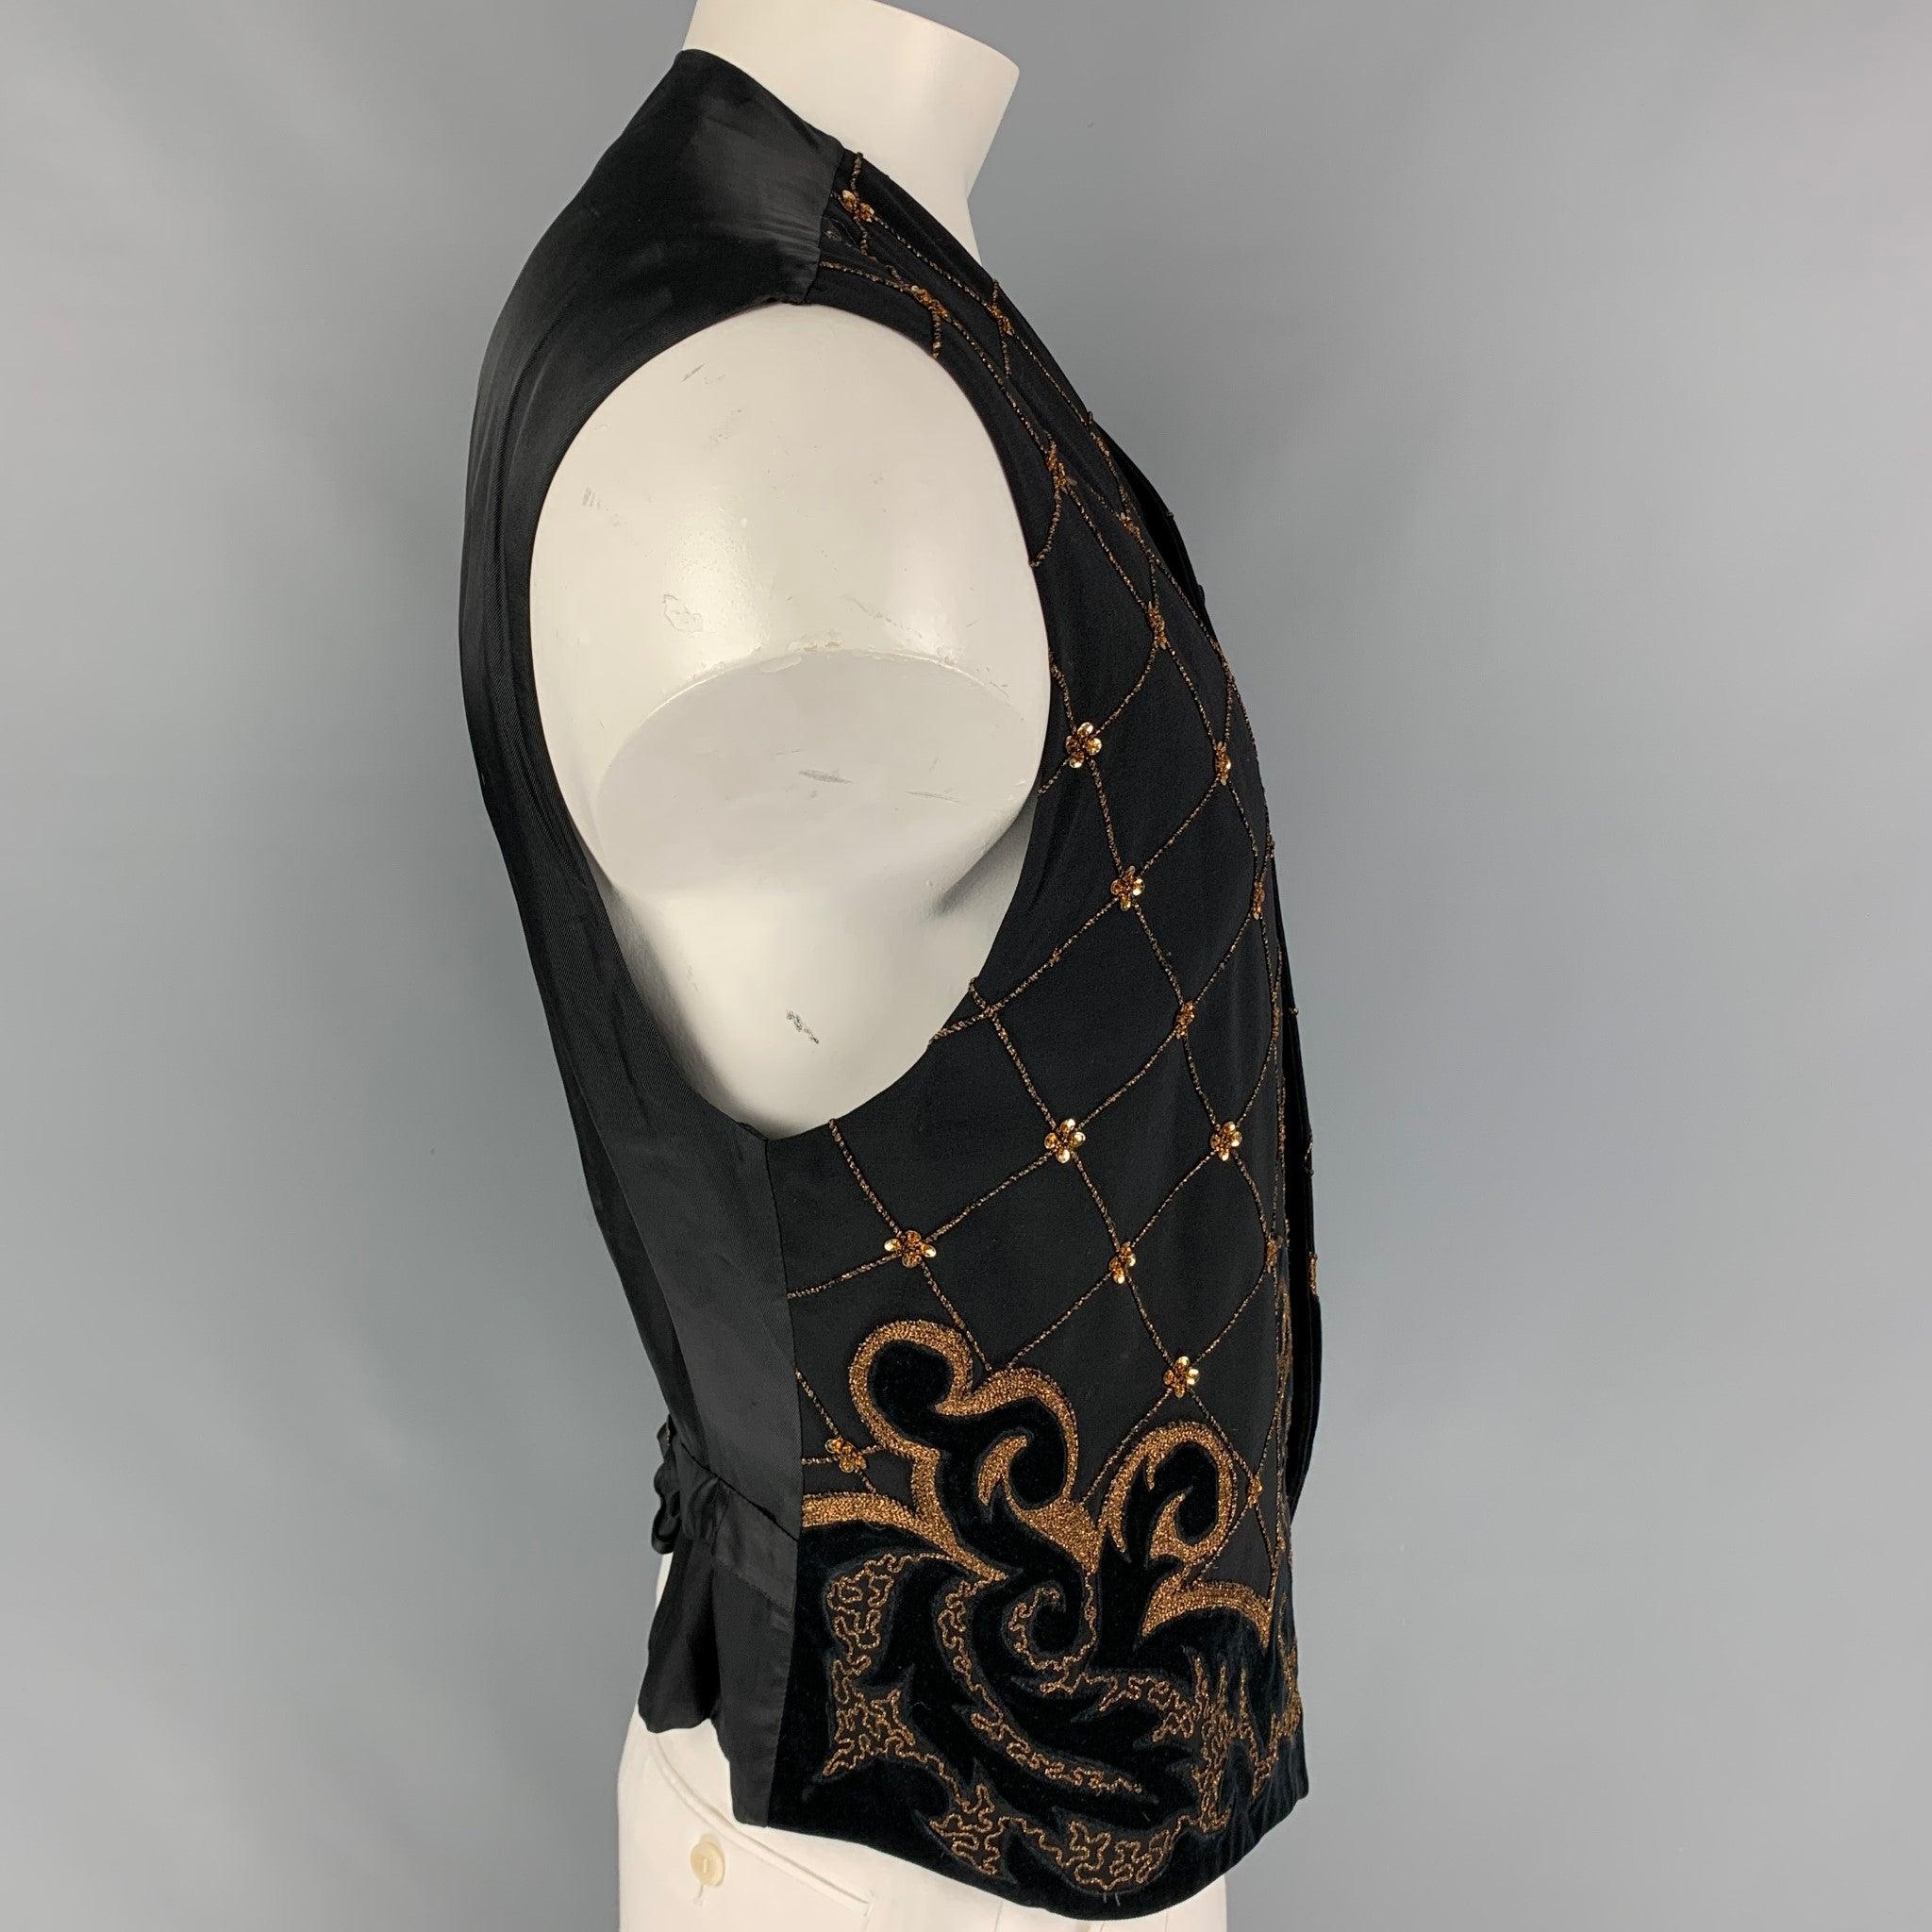 Le gilet Vintage Byblos est en laine noire et présente des motifs brodés en or, des bordures en velours, une sangle de ceinture au dos et une fermeture boutonnée. Fabriquées en Italie.
Très bien
Etat d'occasion. 

Marqué :   52 

Mesures : 
 
Épaule